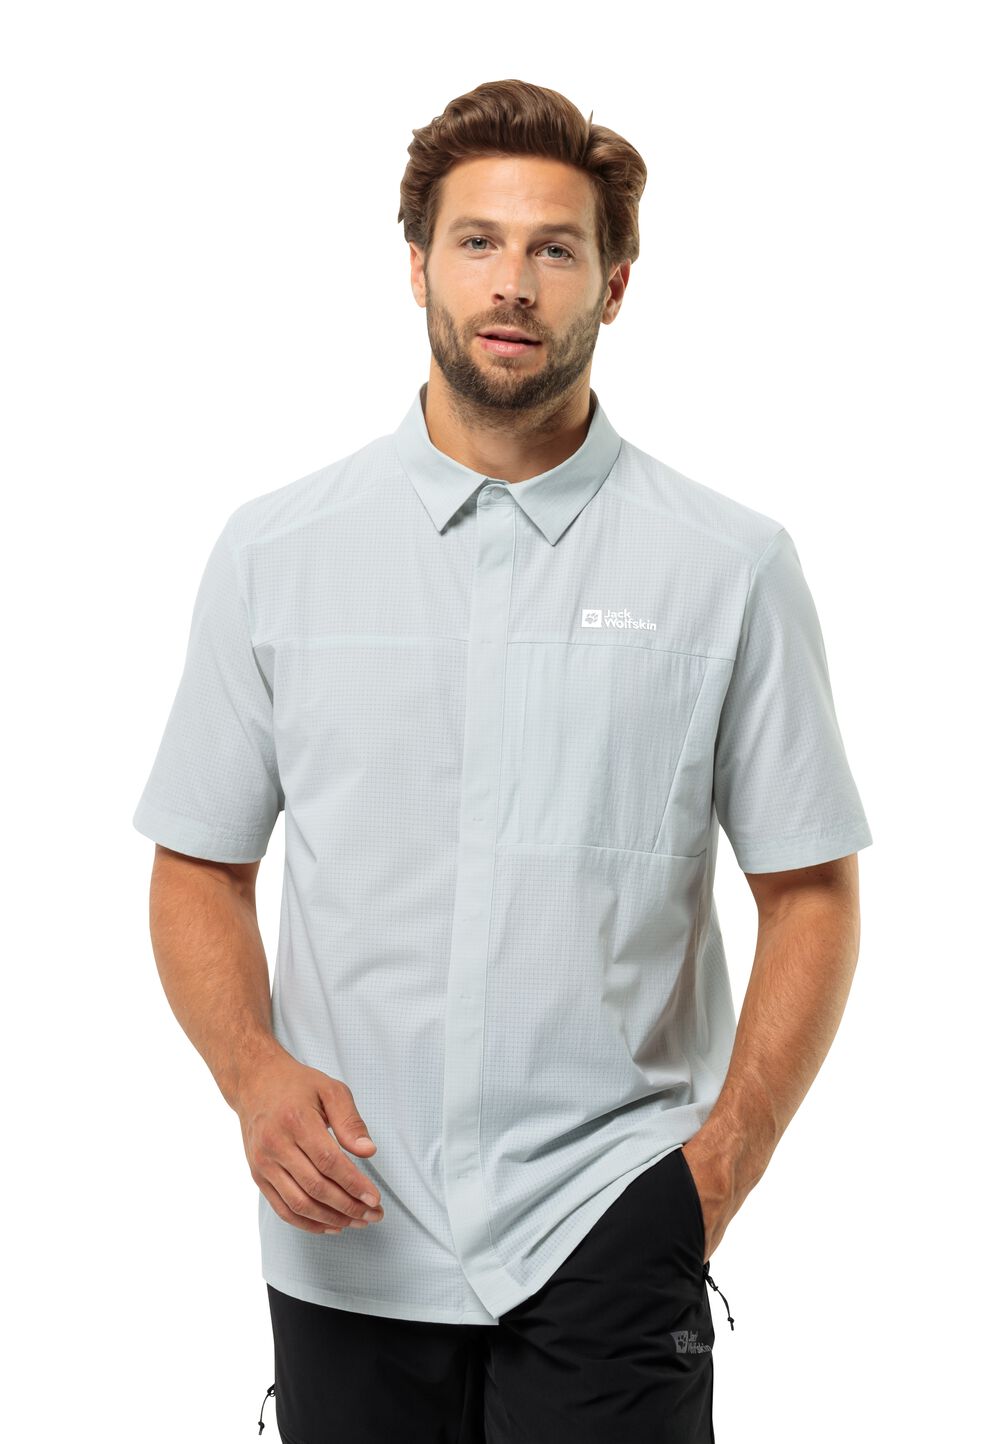 Jack Wolfskin Vandra S S Shirt Men Overhemd met korte mouwen Heren XL grijs cool grey